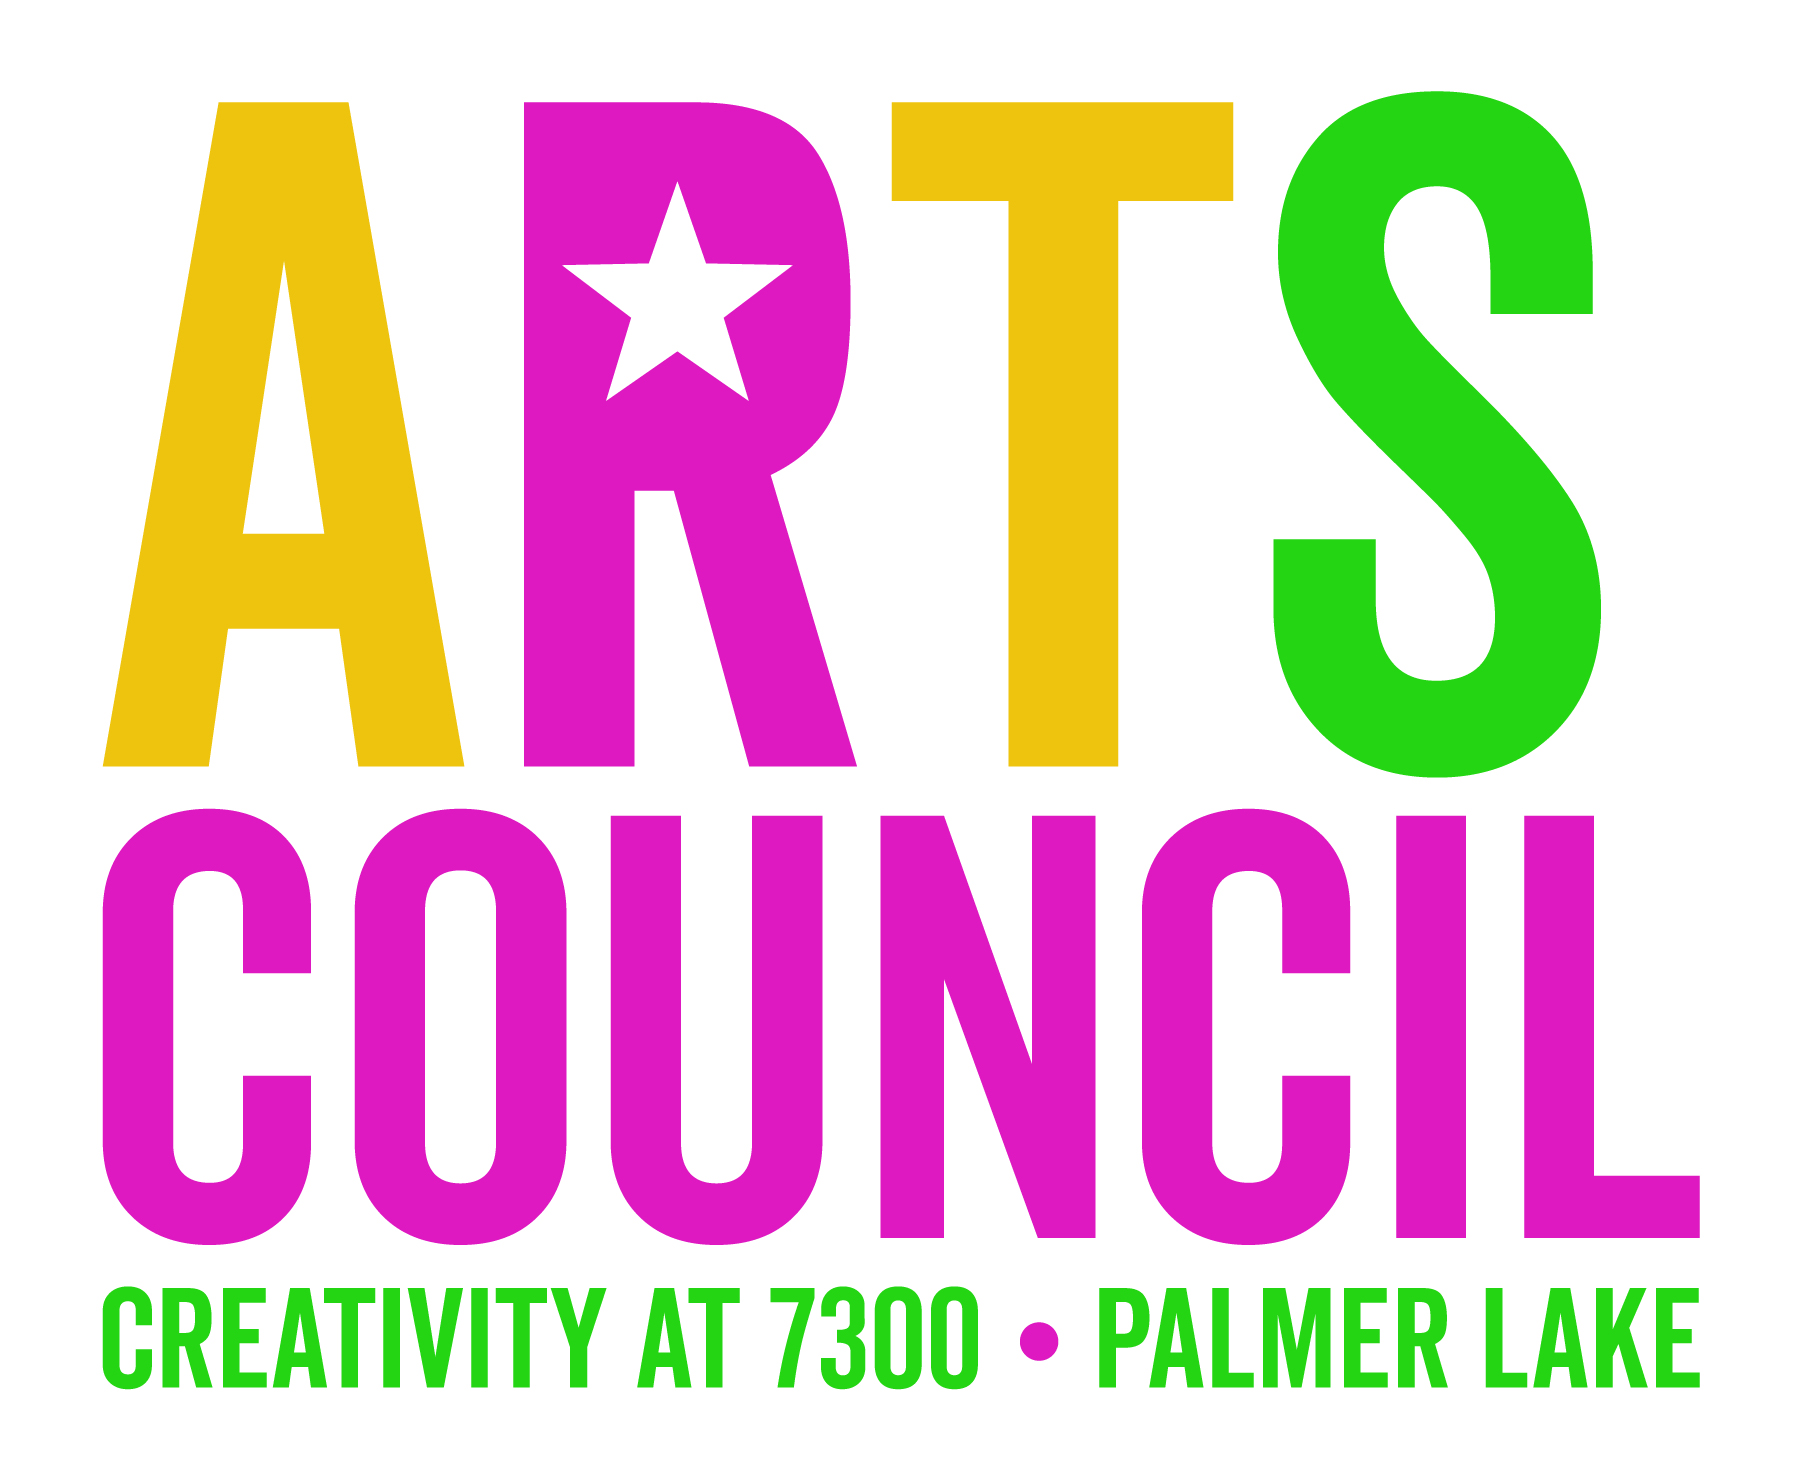 Palmer Lake Art Council (PLAC)